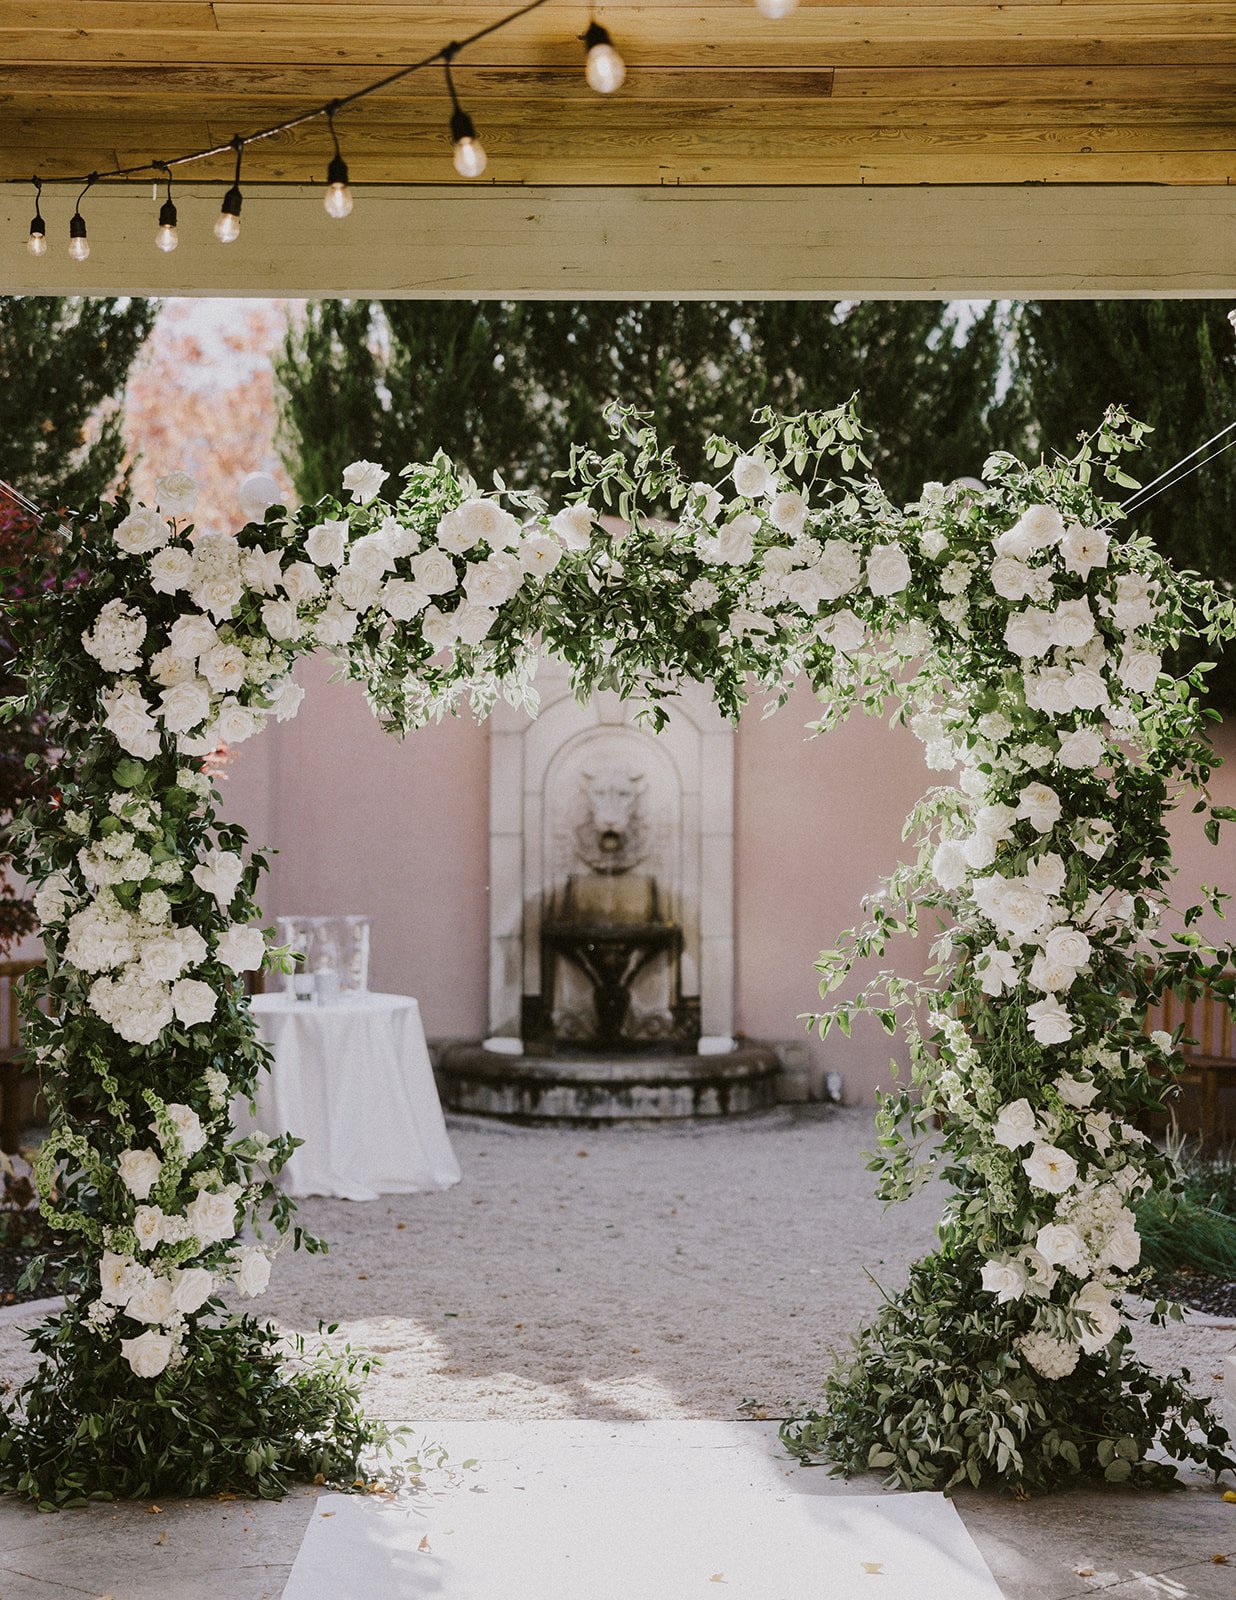  floral arch wedding altar aisle walk  